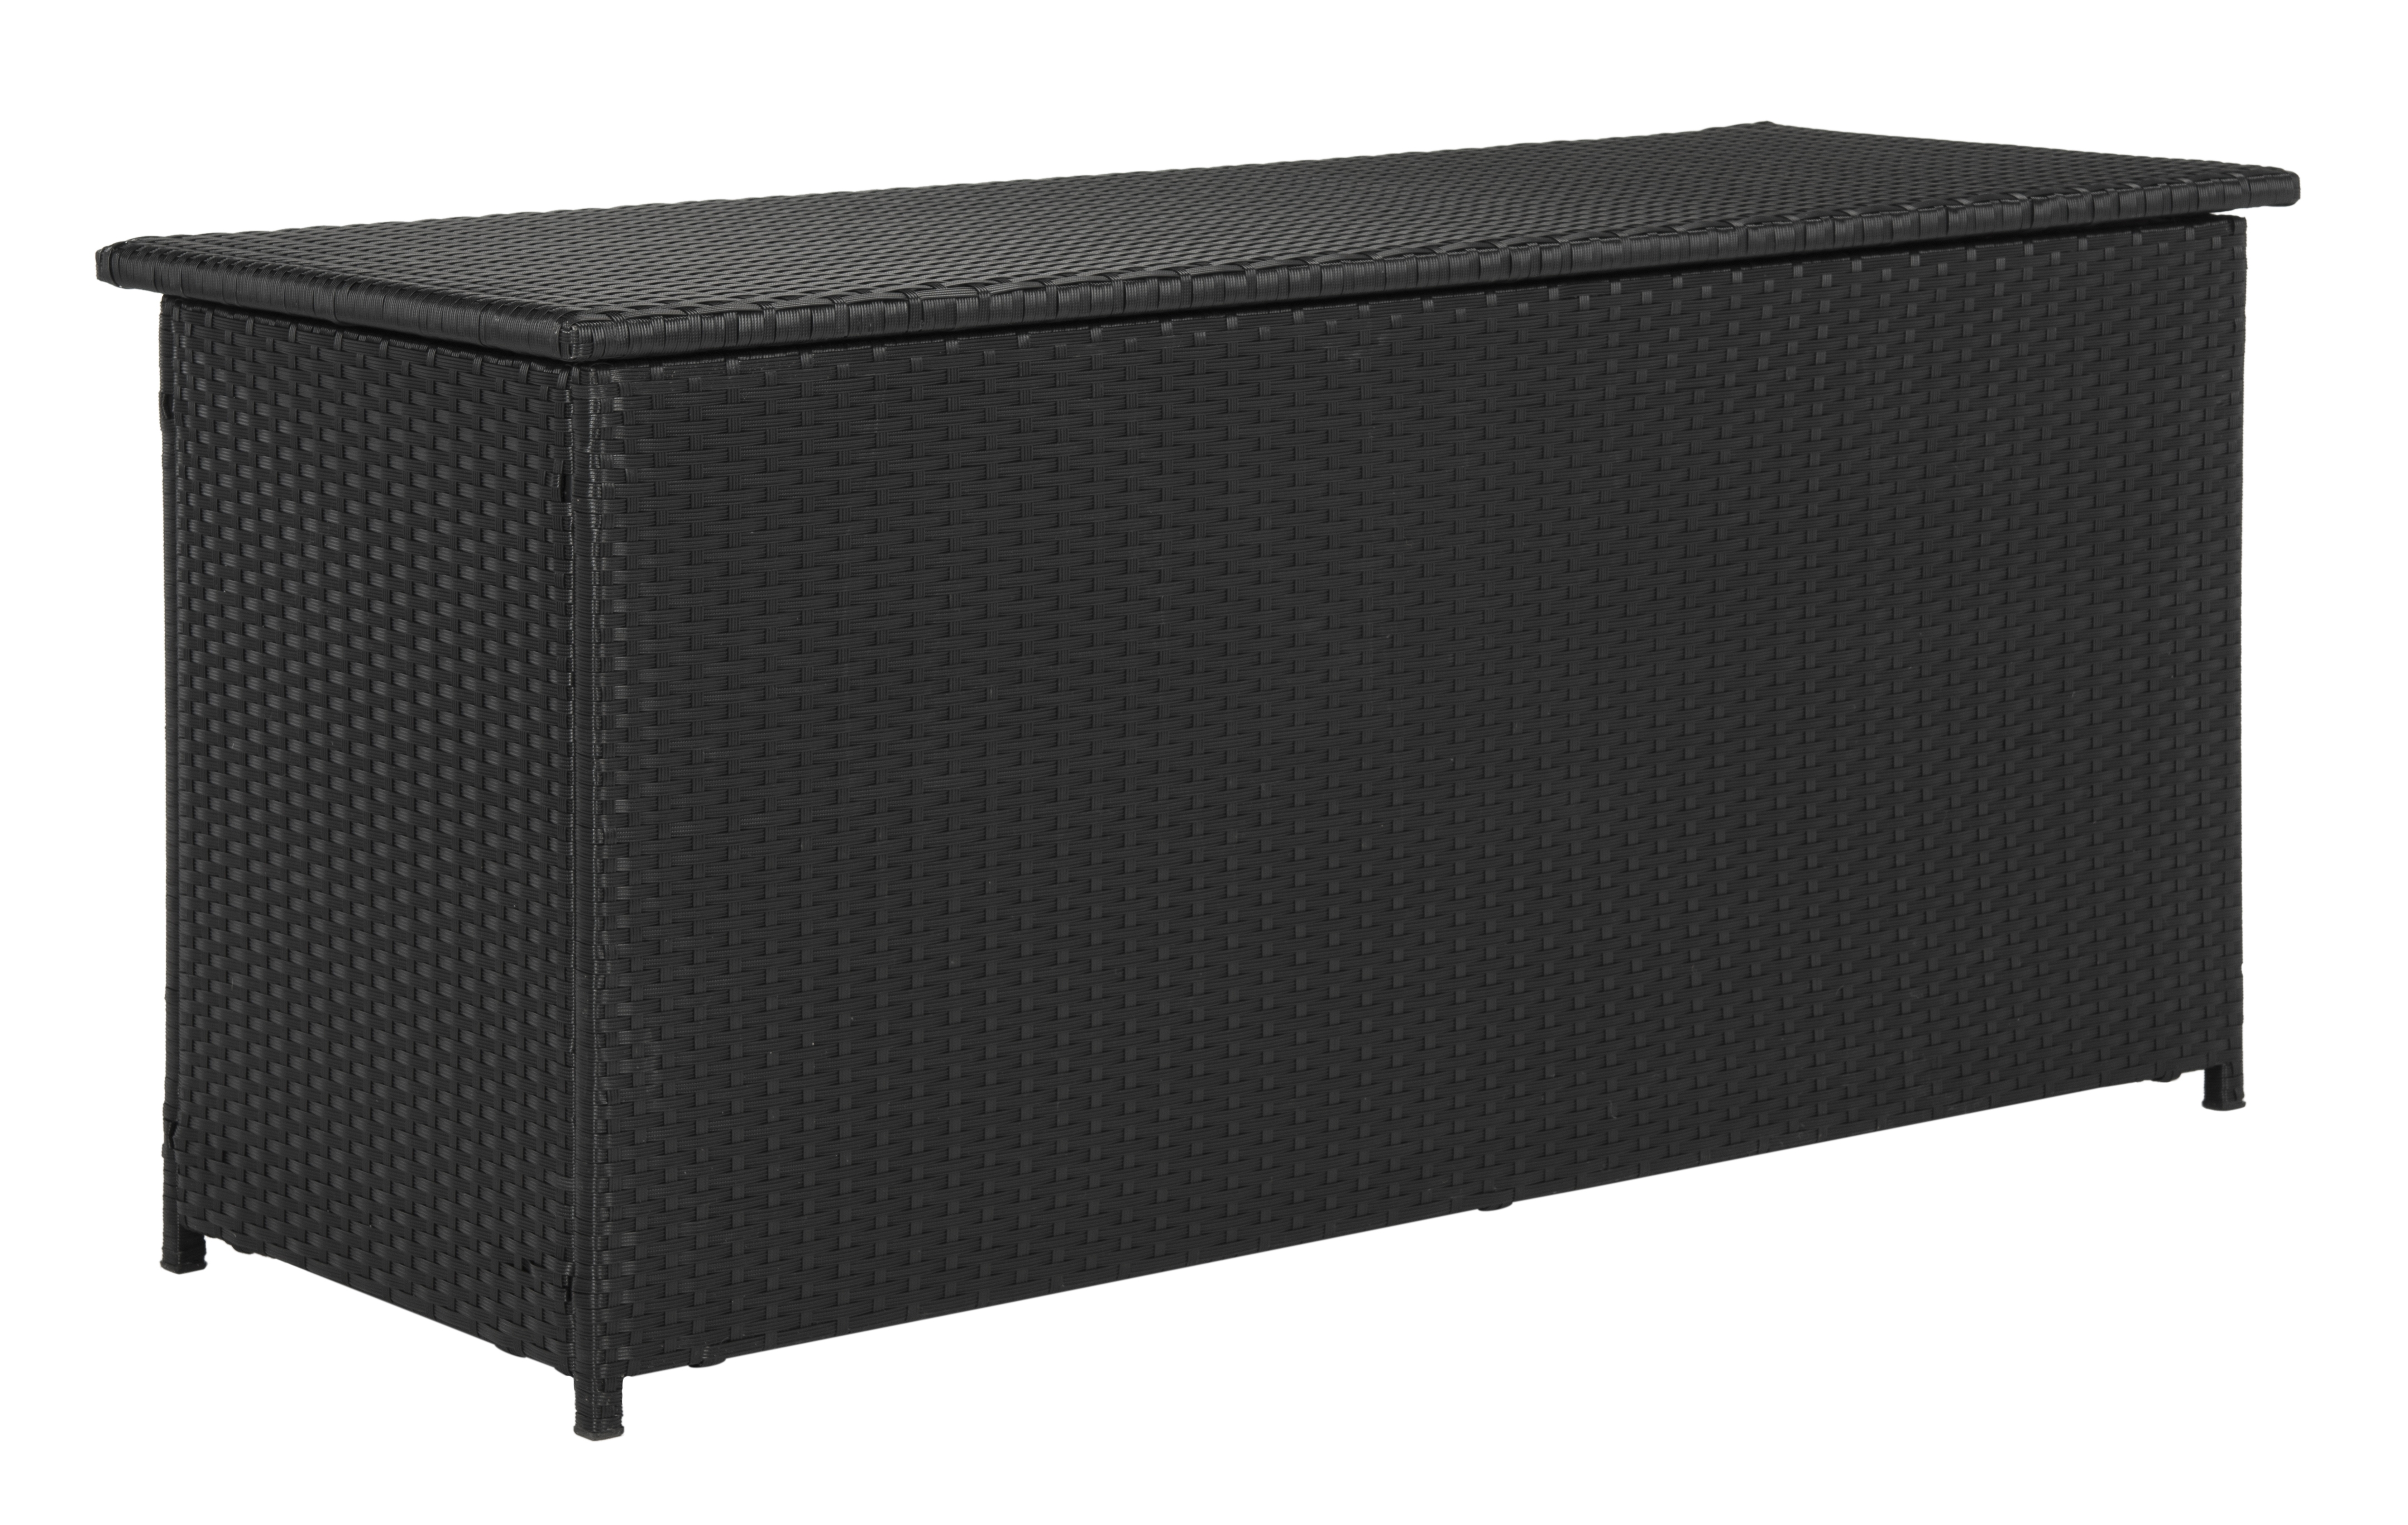 Cosima 53-Inch W 13 Gallon Outdoor Storage Box - Black - Safavieh - Image 1